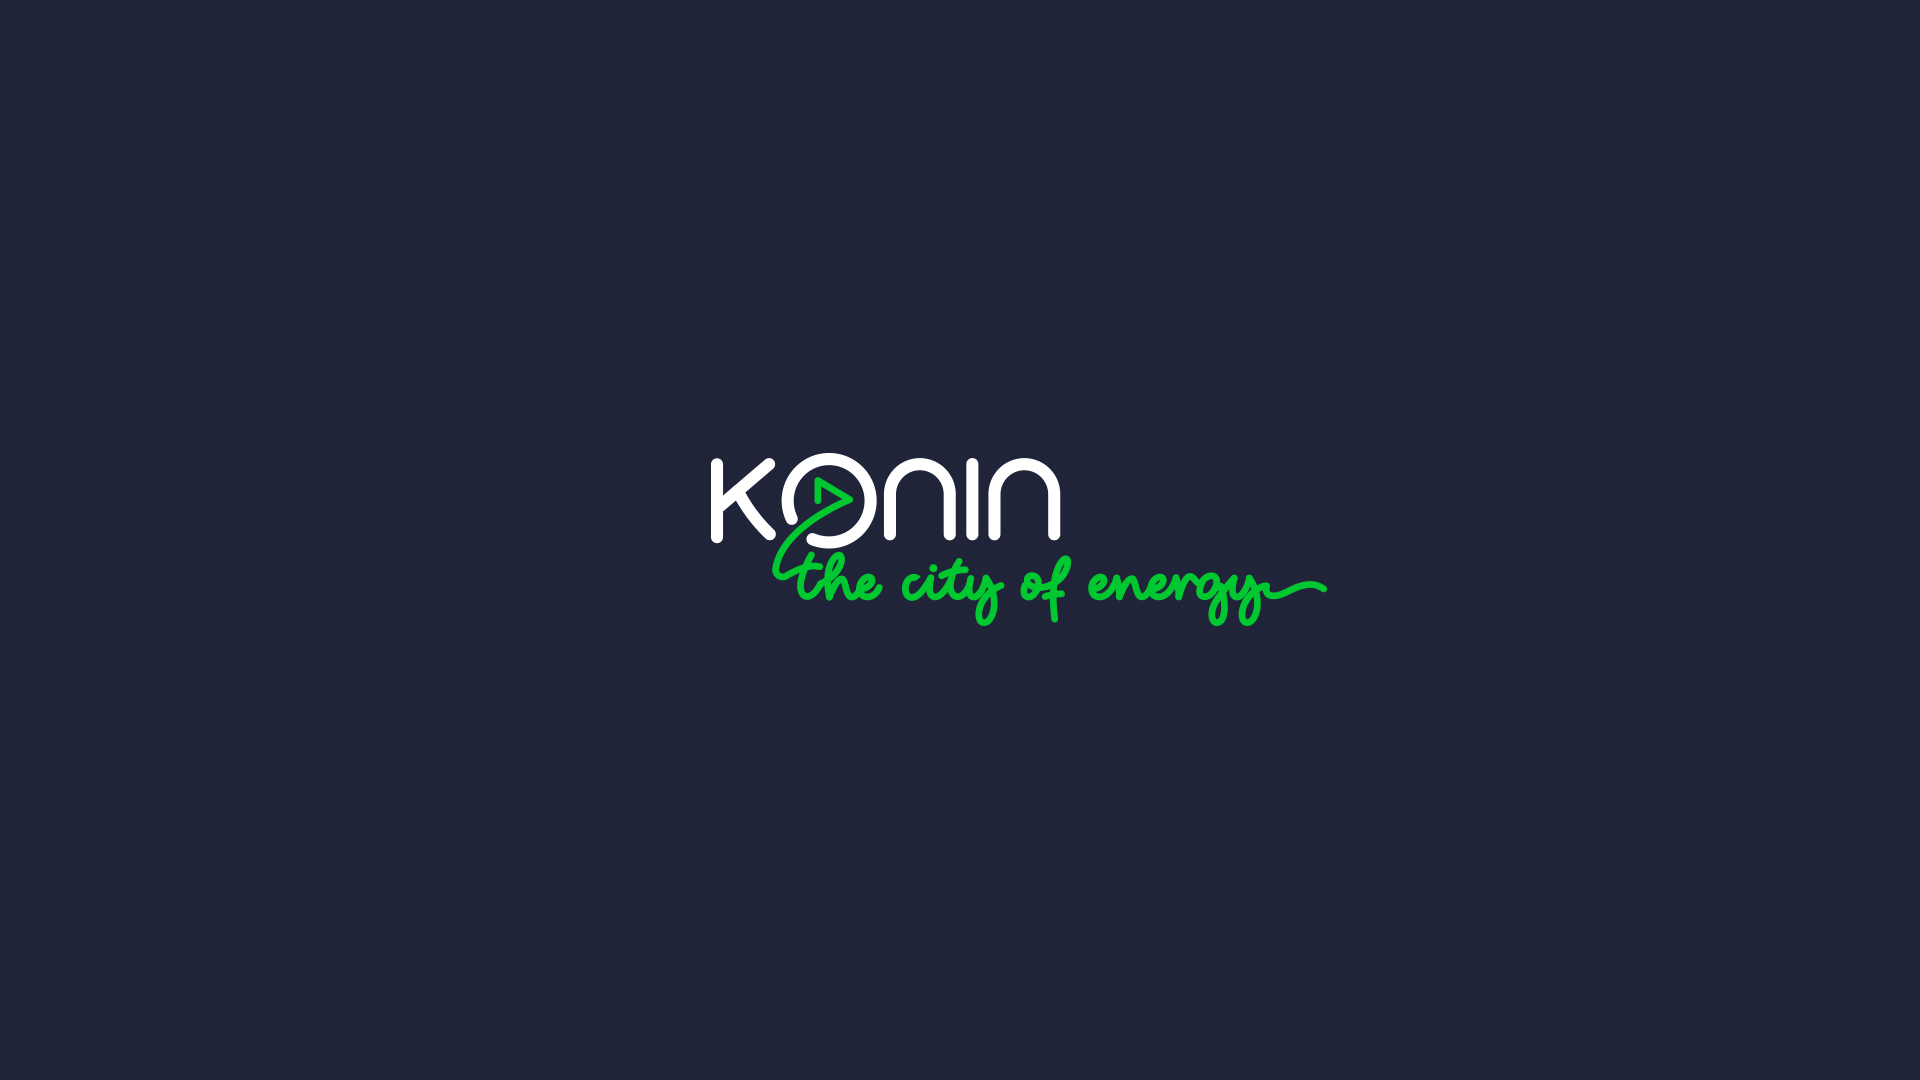 Konin image